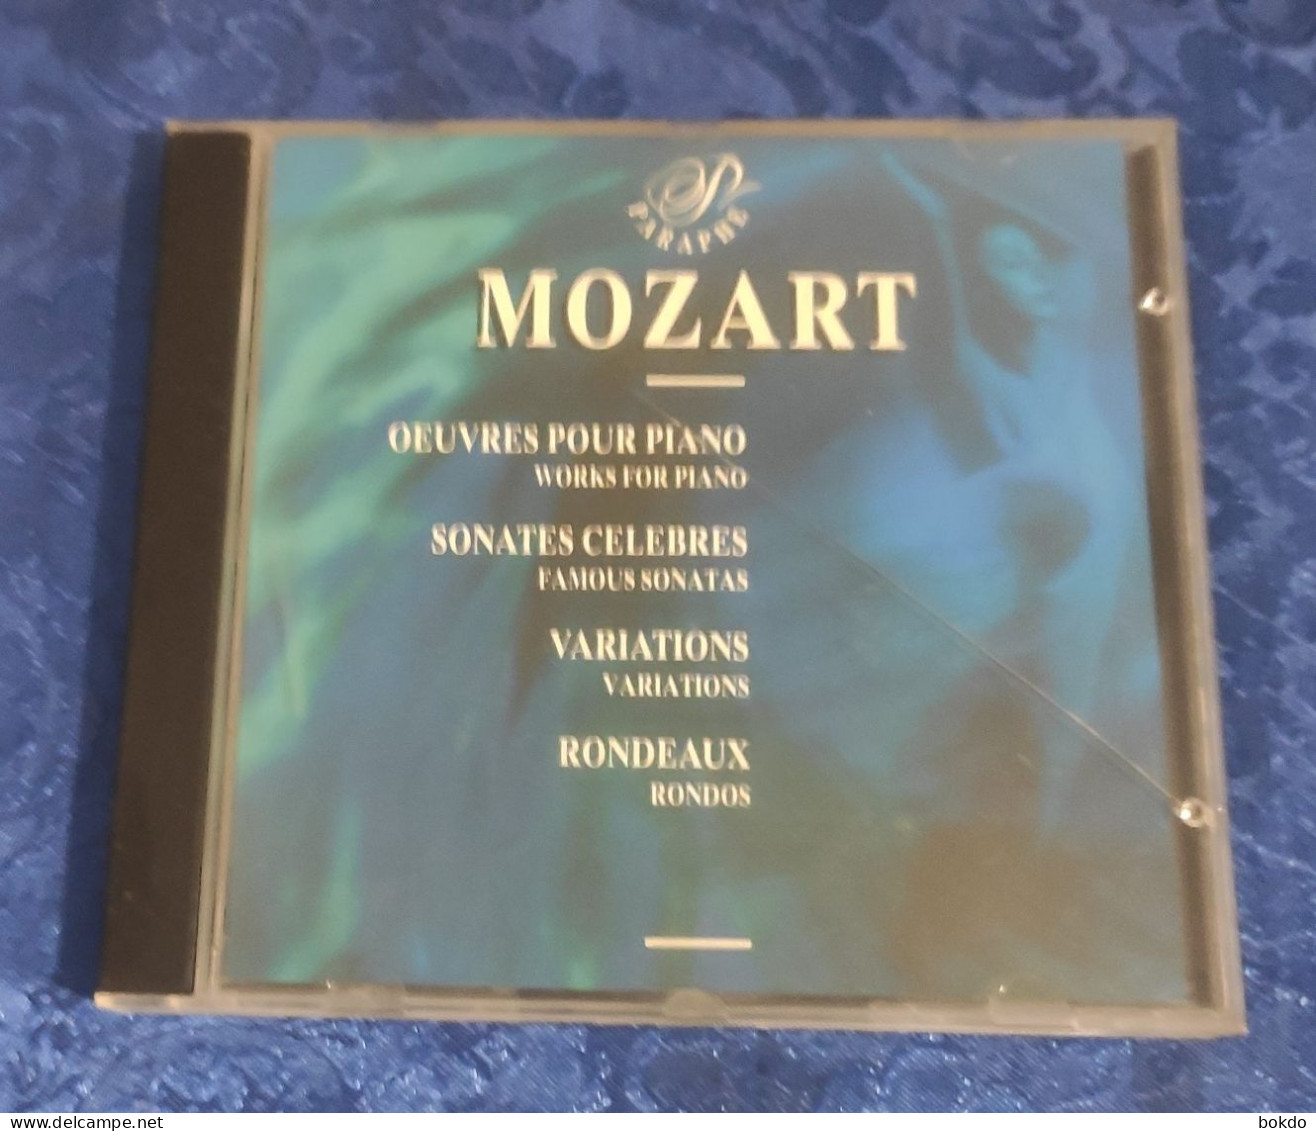 Mozart - Oeuvres Pour Piano - Sonates Celebres - Variation - Rondeaux - Klassiekers